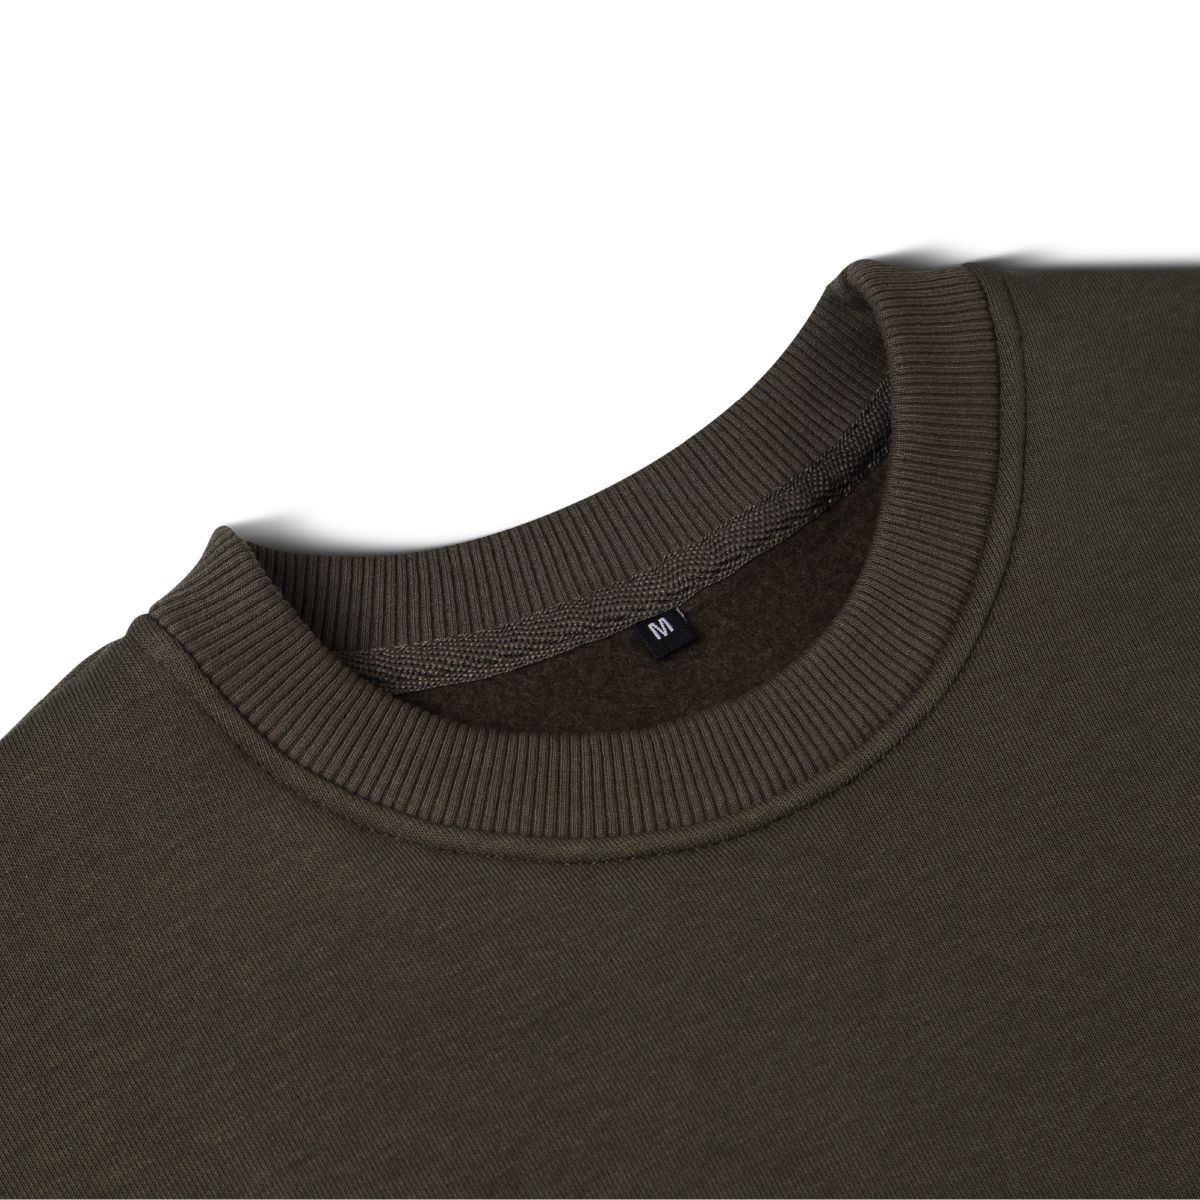 Світшот Base Soft Sweatshirt. Вільний стиль. Колір Олива/Olive. Розмір L 7